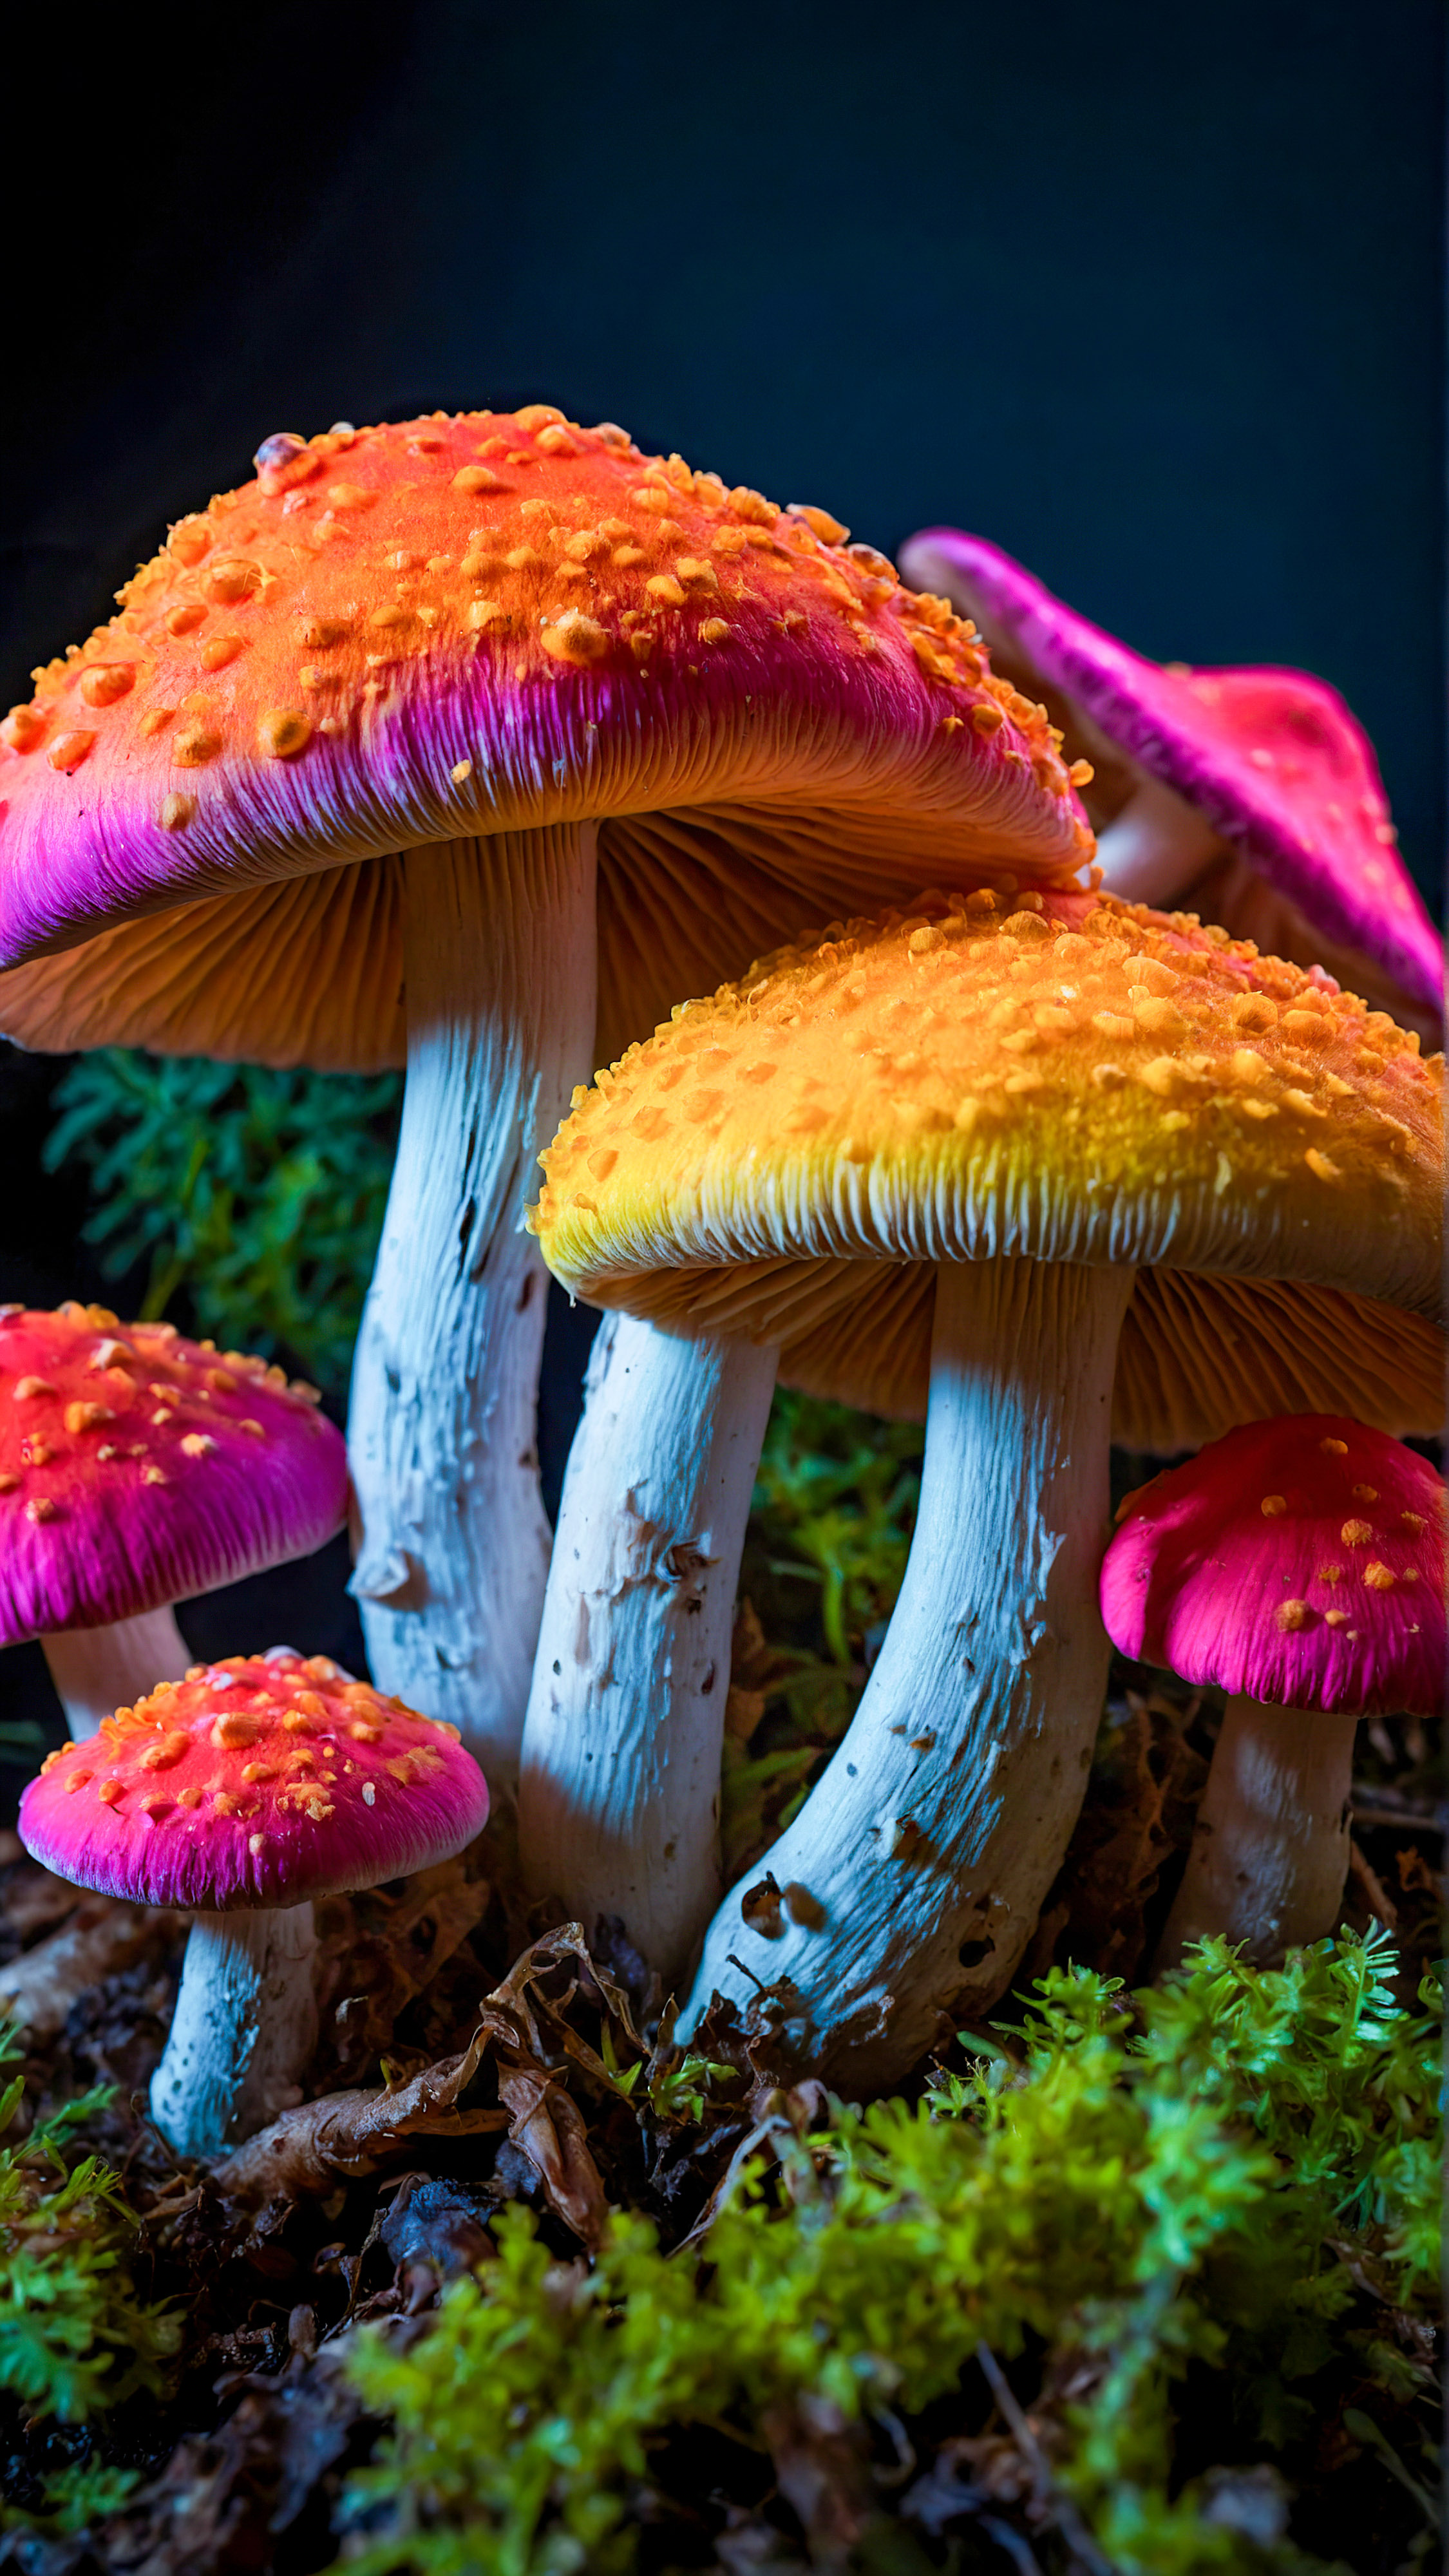 Laissez-vous hypnotiser par nos fonds d'écran iPhone style 4K, présentant un groupe de champignons aux couleurs vives et néon sur un fond sombre, créant un effet visuellement frappant et surréaliste.